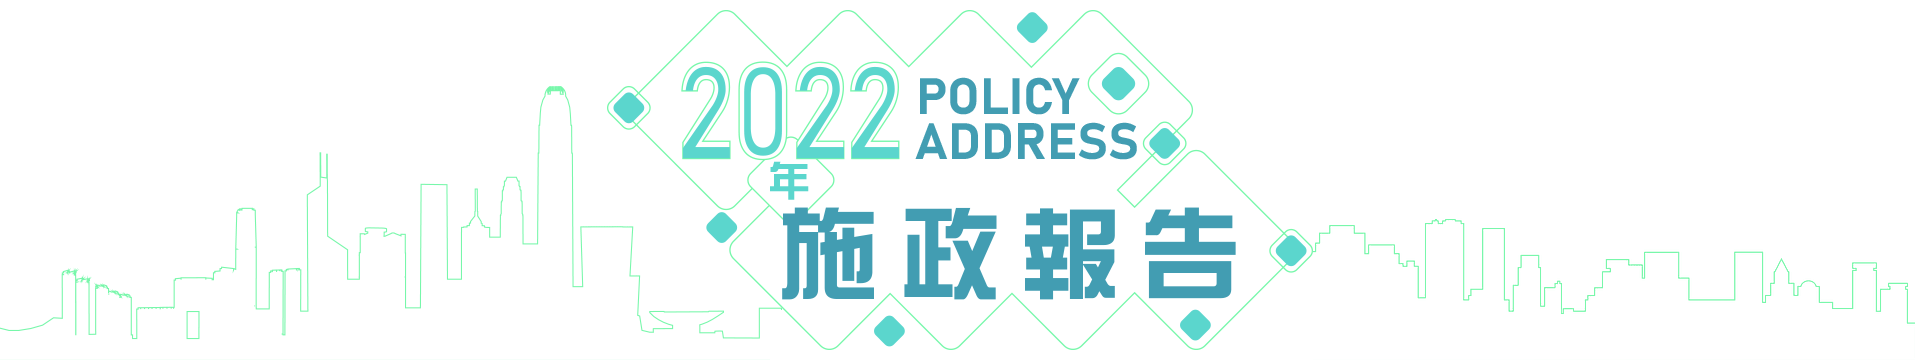 2022年 施政報告 Policy Address 